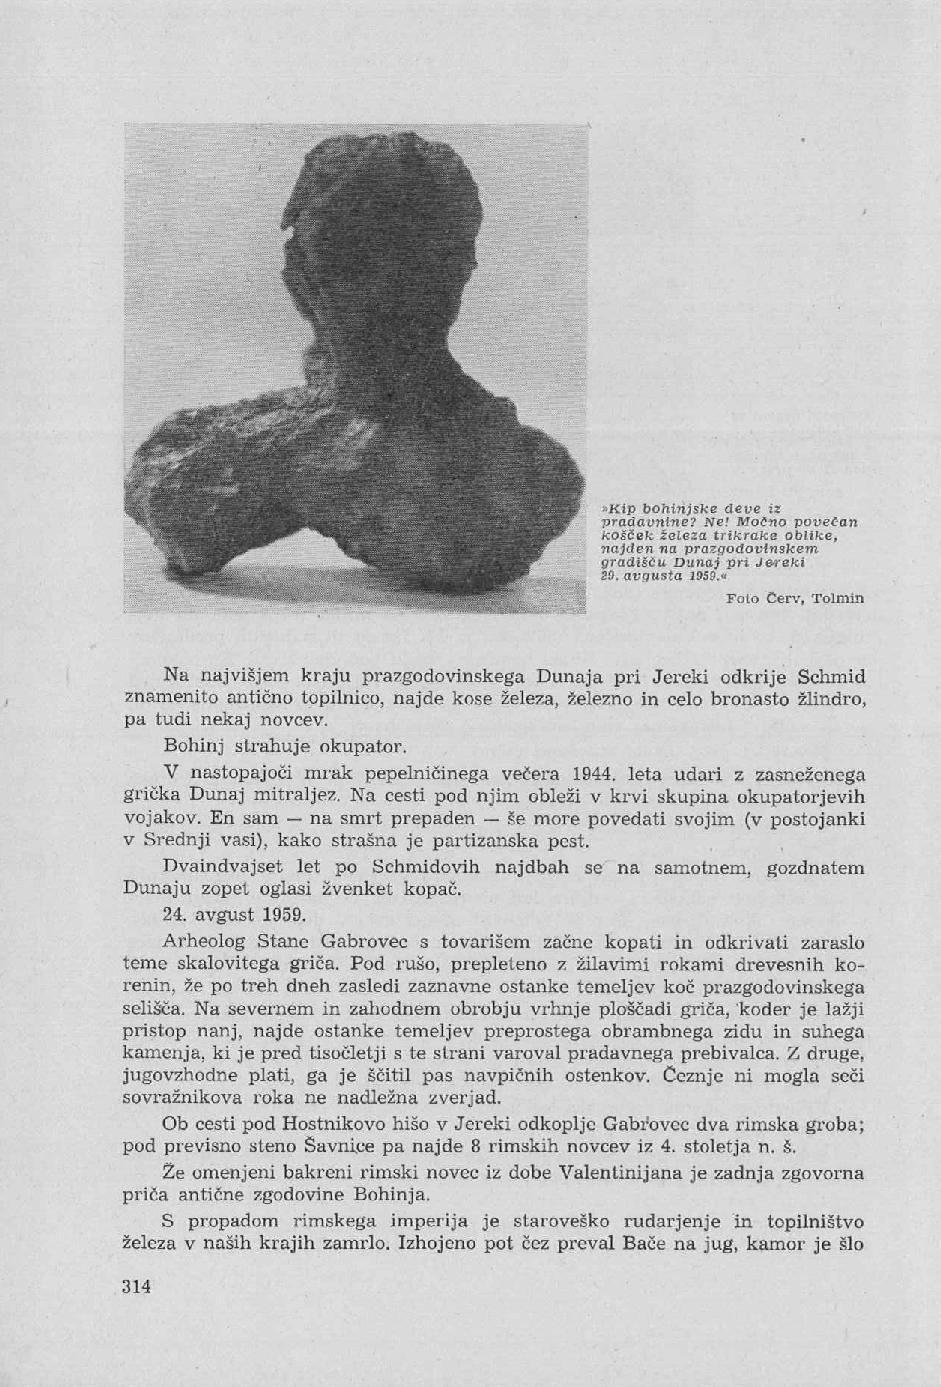 »Kip bohinjske deve iz pradavnine? Ne! Močno povečan košček železa trikrake oblike, najden na prazgodovinskem gradišču Dunaj pri J&reki 29. avgusta 1959.